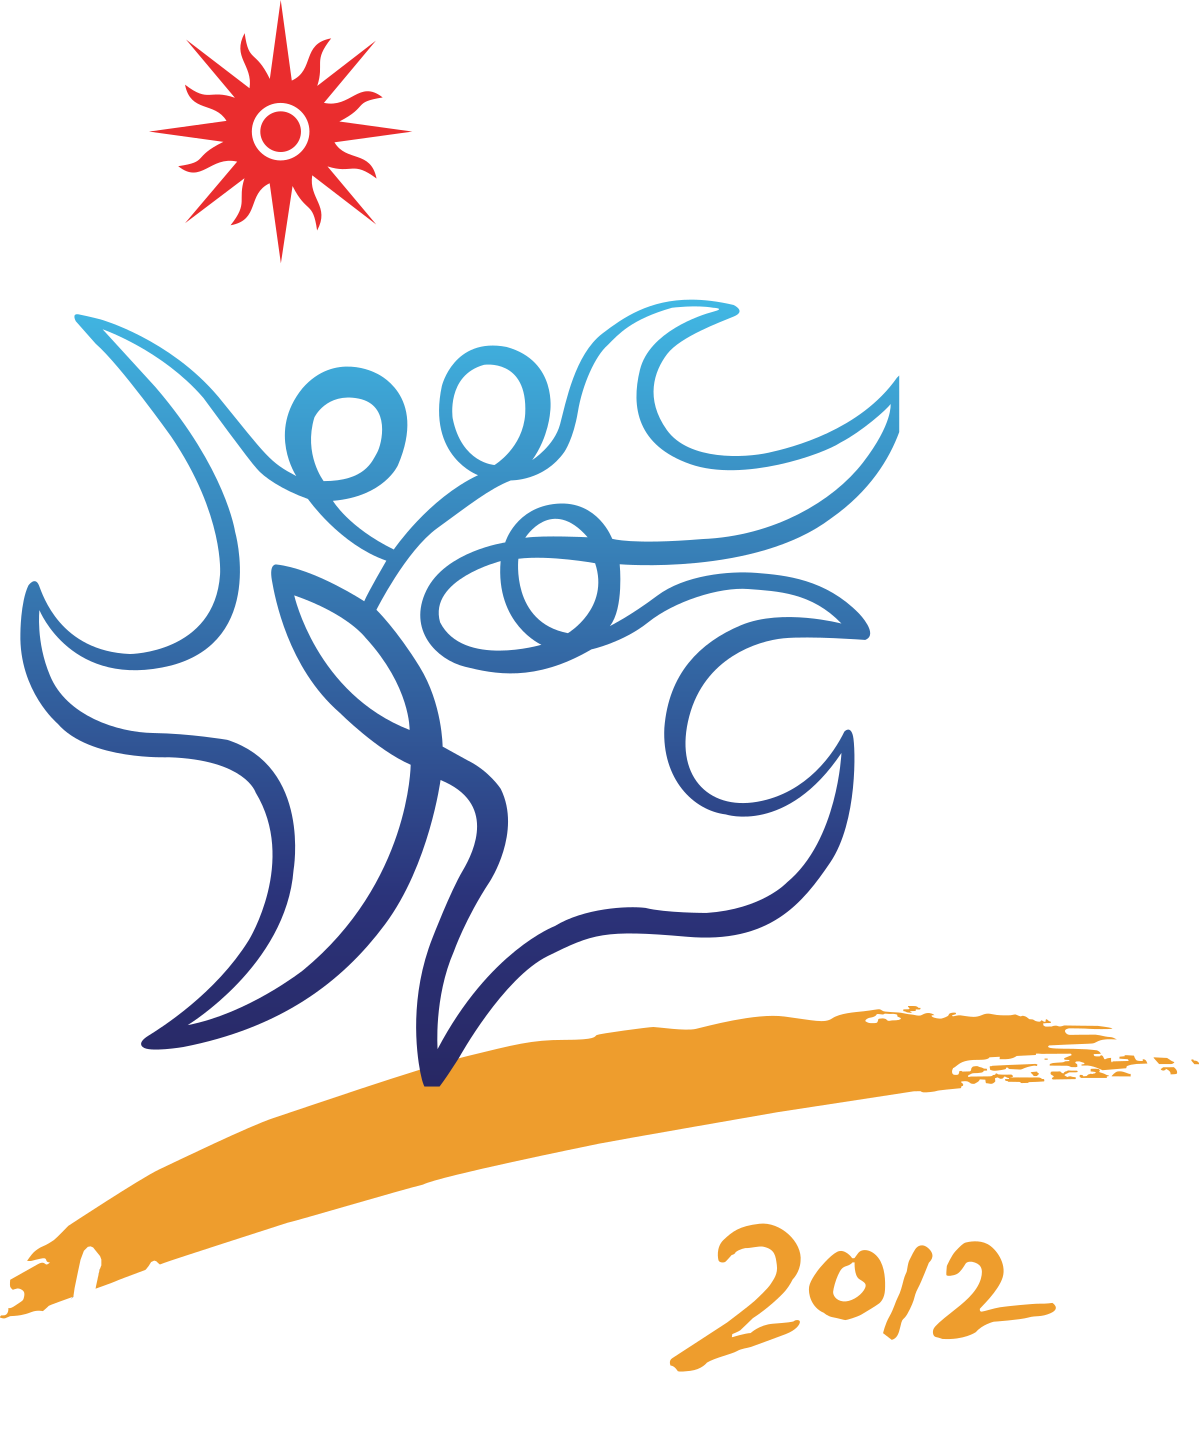 Haiyang 2012